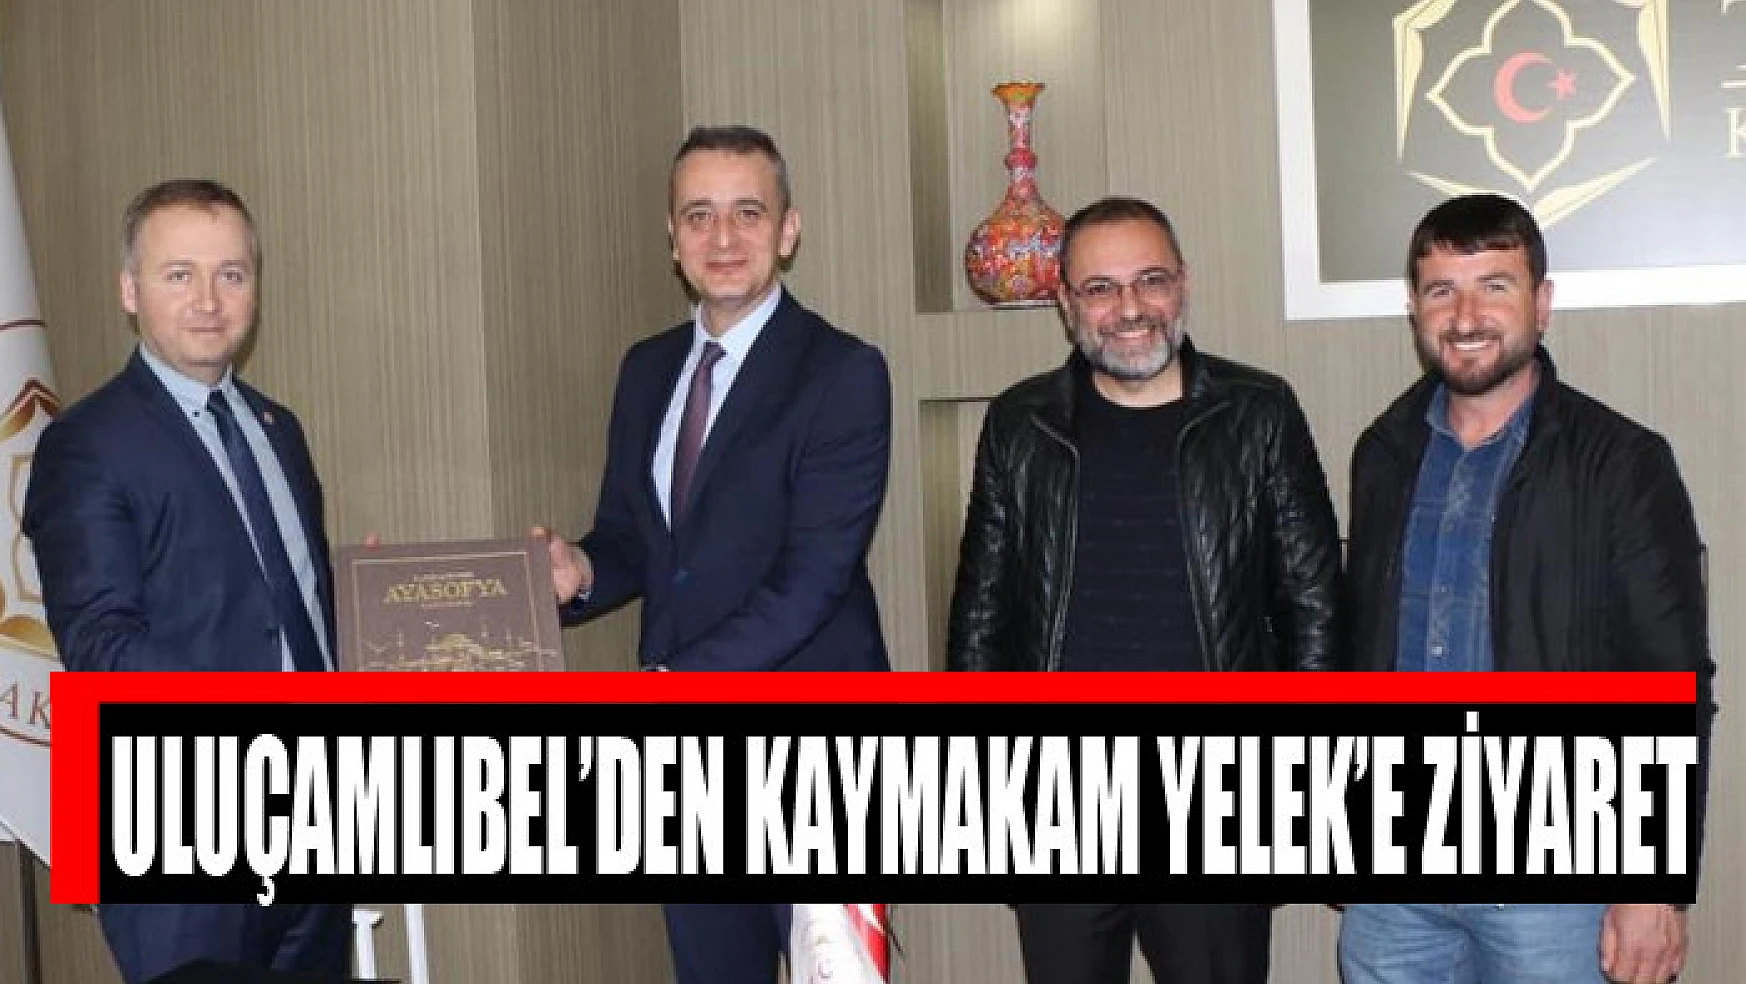 BİK Müdürü Uluçamlıbel'den Kaymakam Yelek'e ziyaret